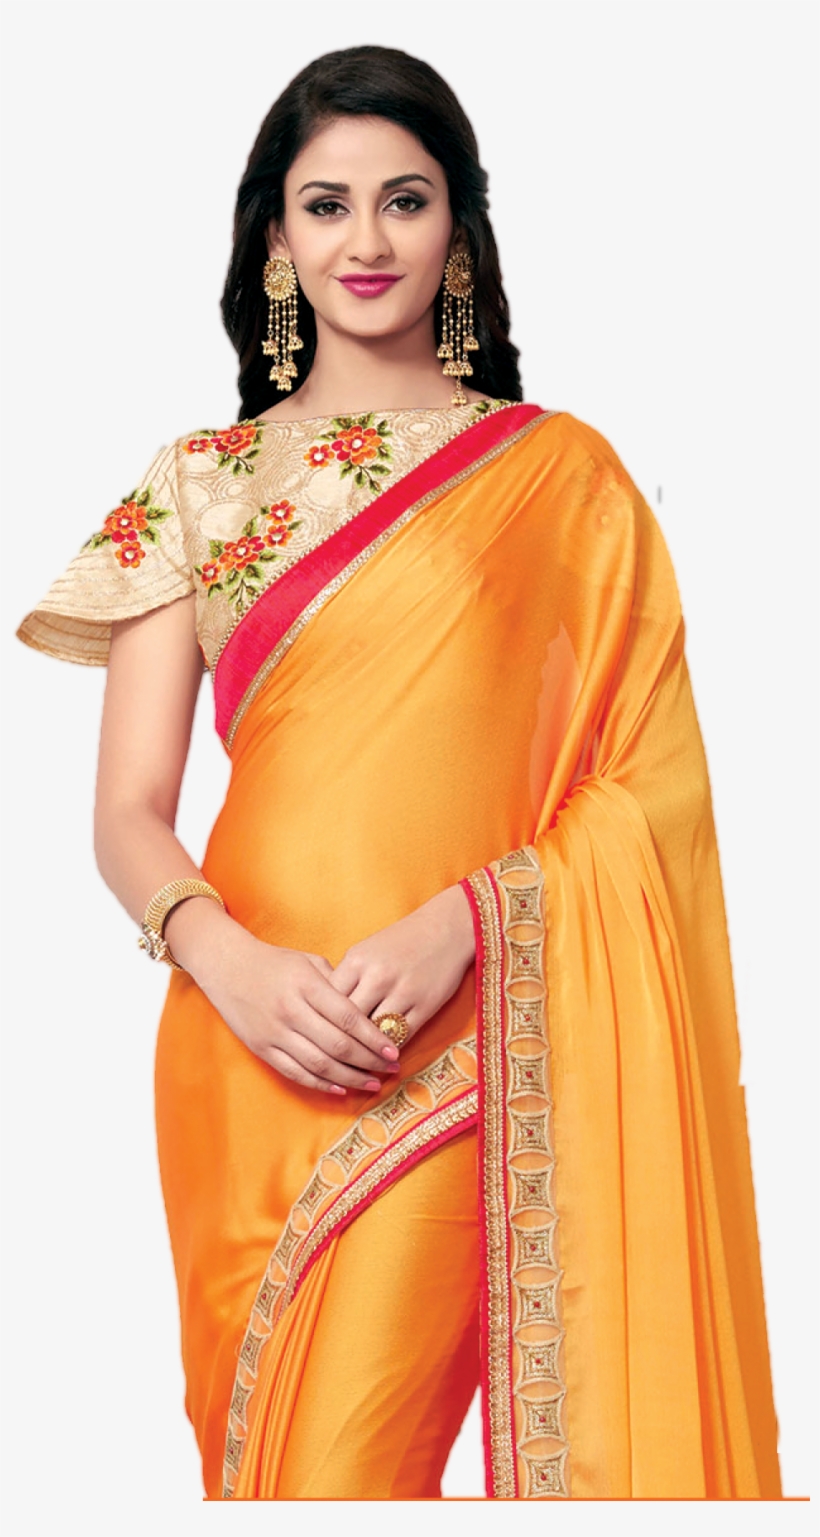 Beautiful Saree Model Png Transparent Image - Craftsvilla Party Wear Saree, transparent png #100138